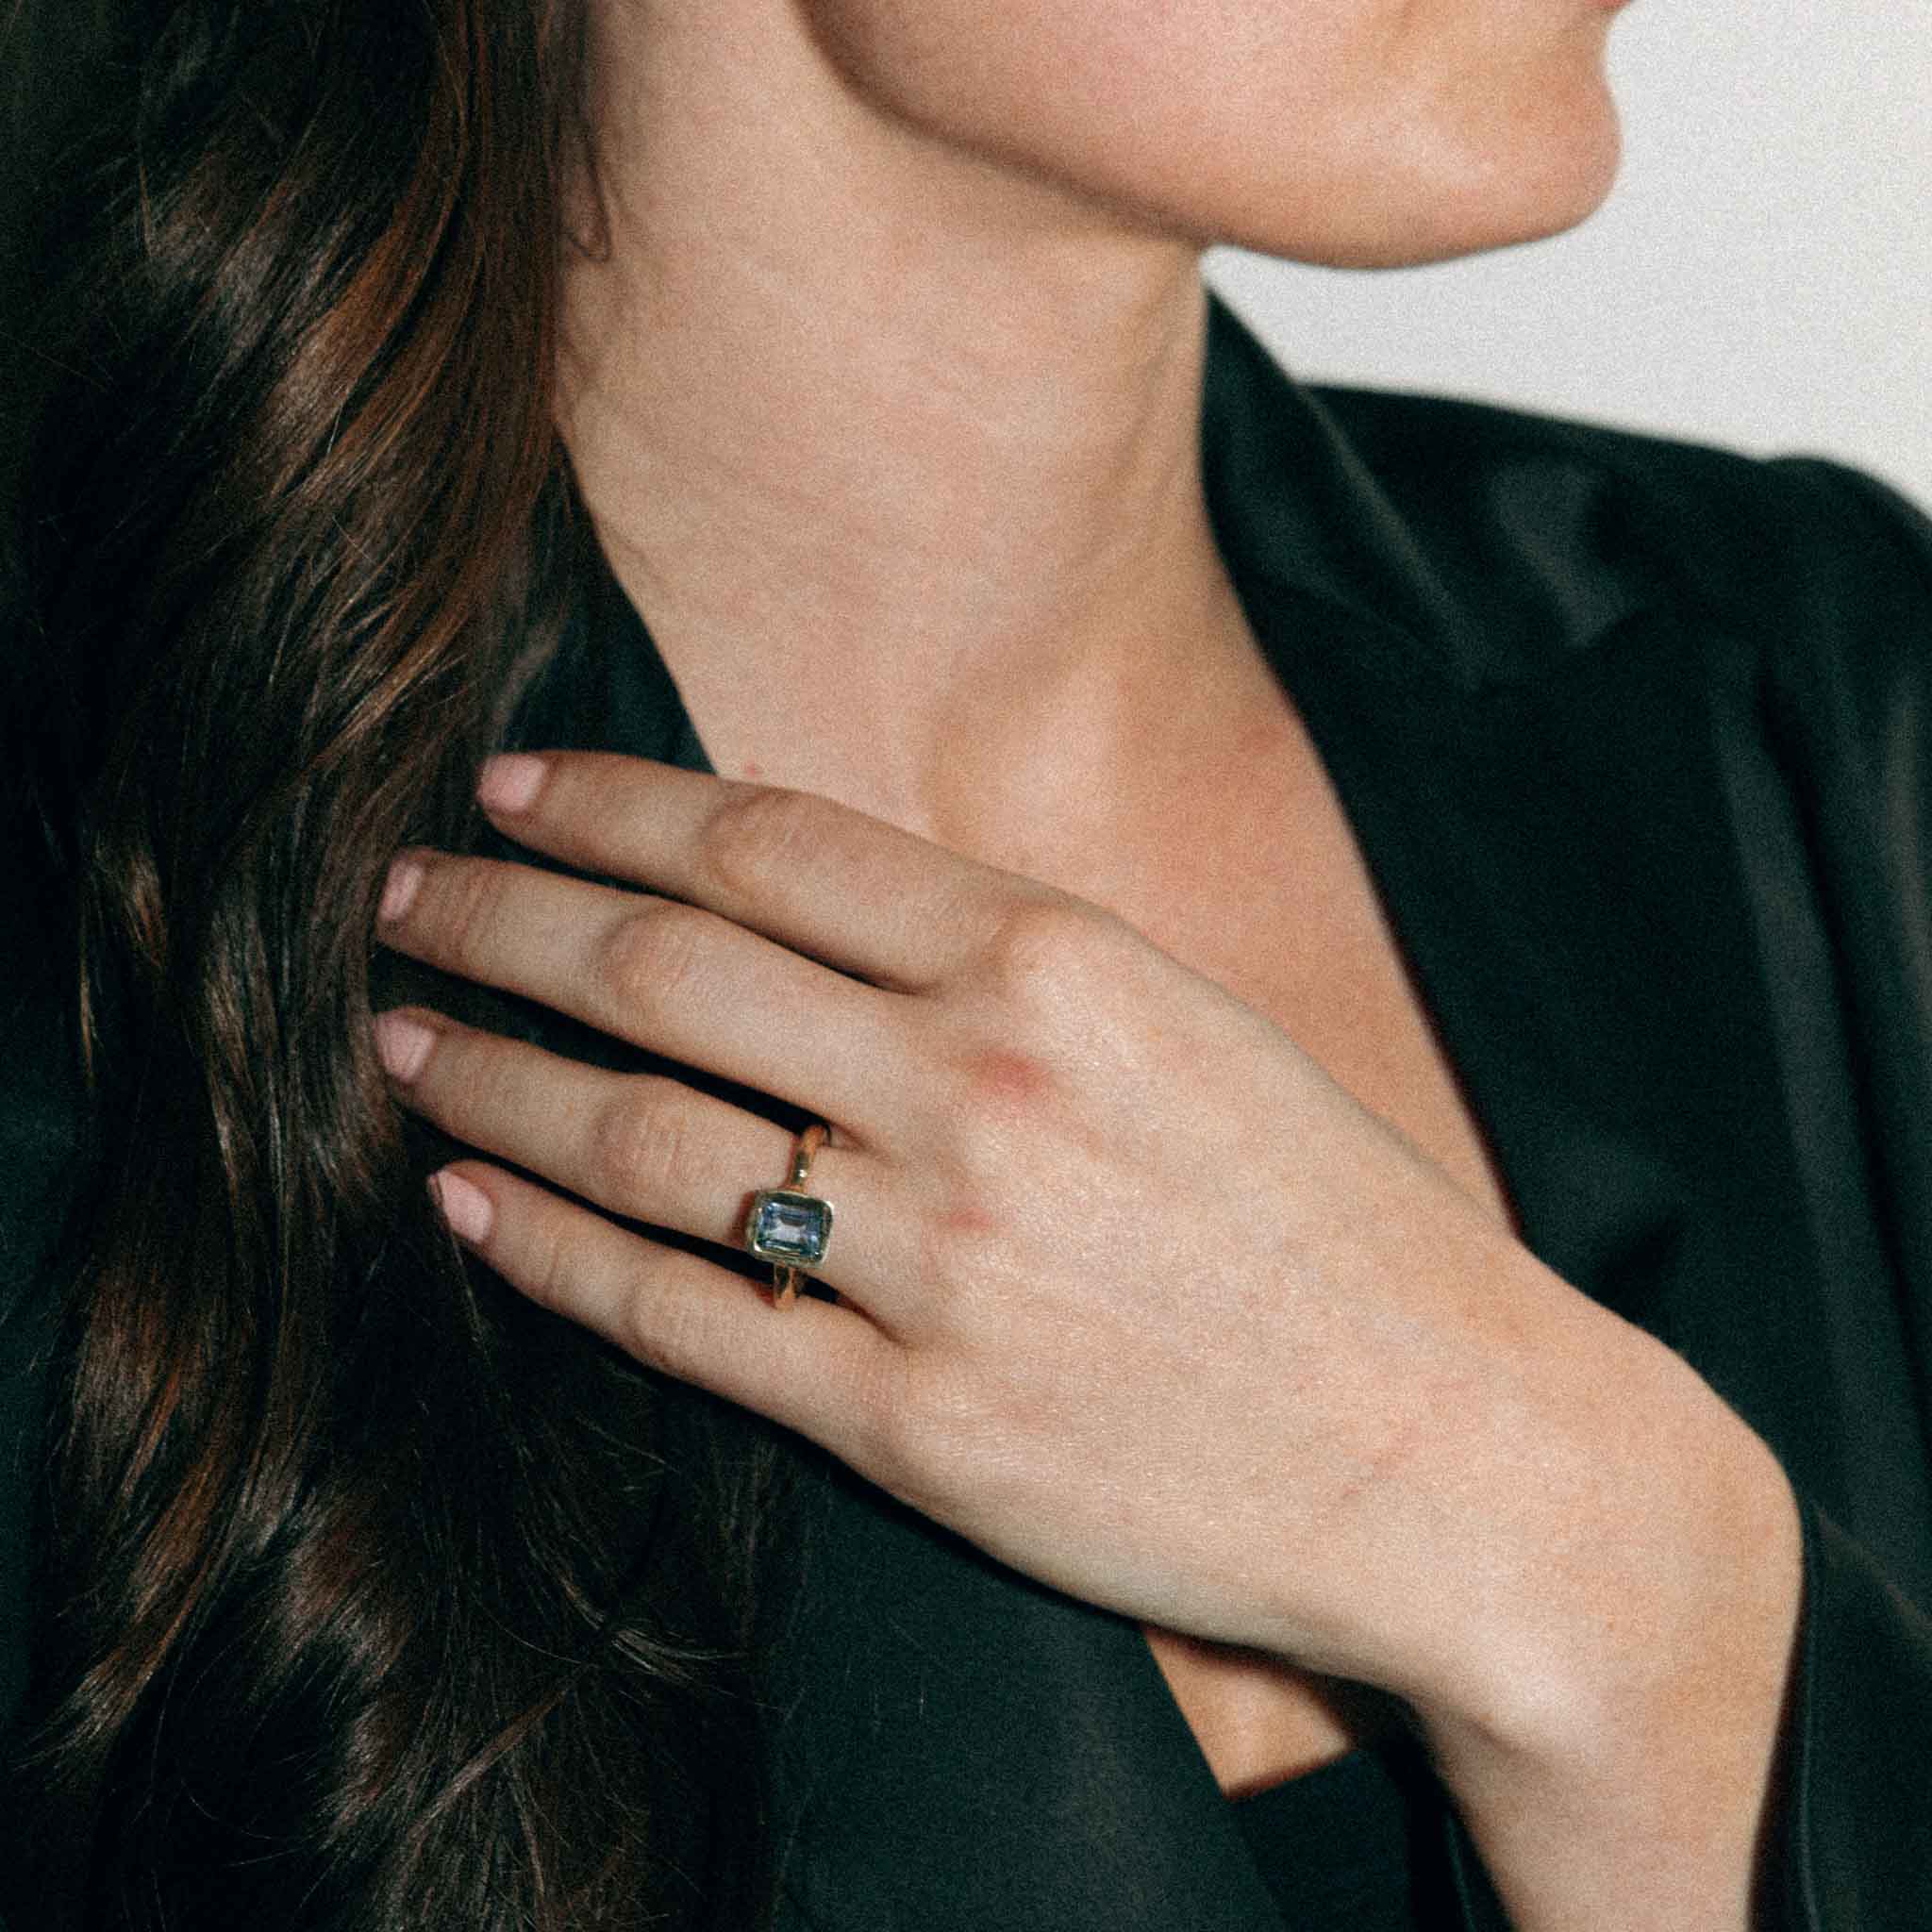 Lauren Ring